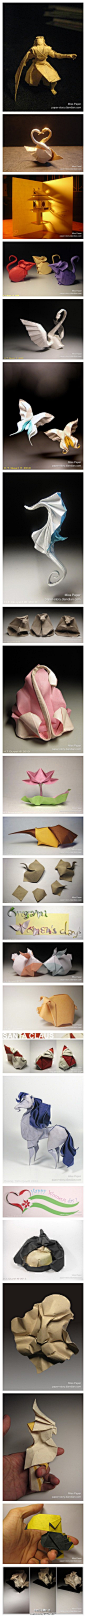 越南的著名折纸艺术家，他的作品风格写实度也不高,但简洁生动，常使用湿折处理。